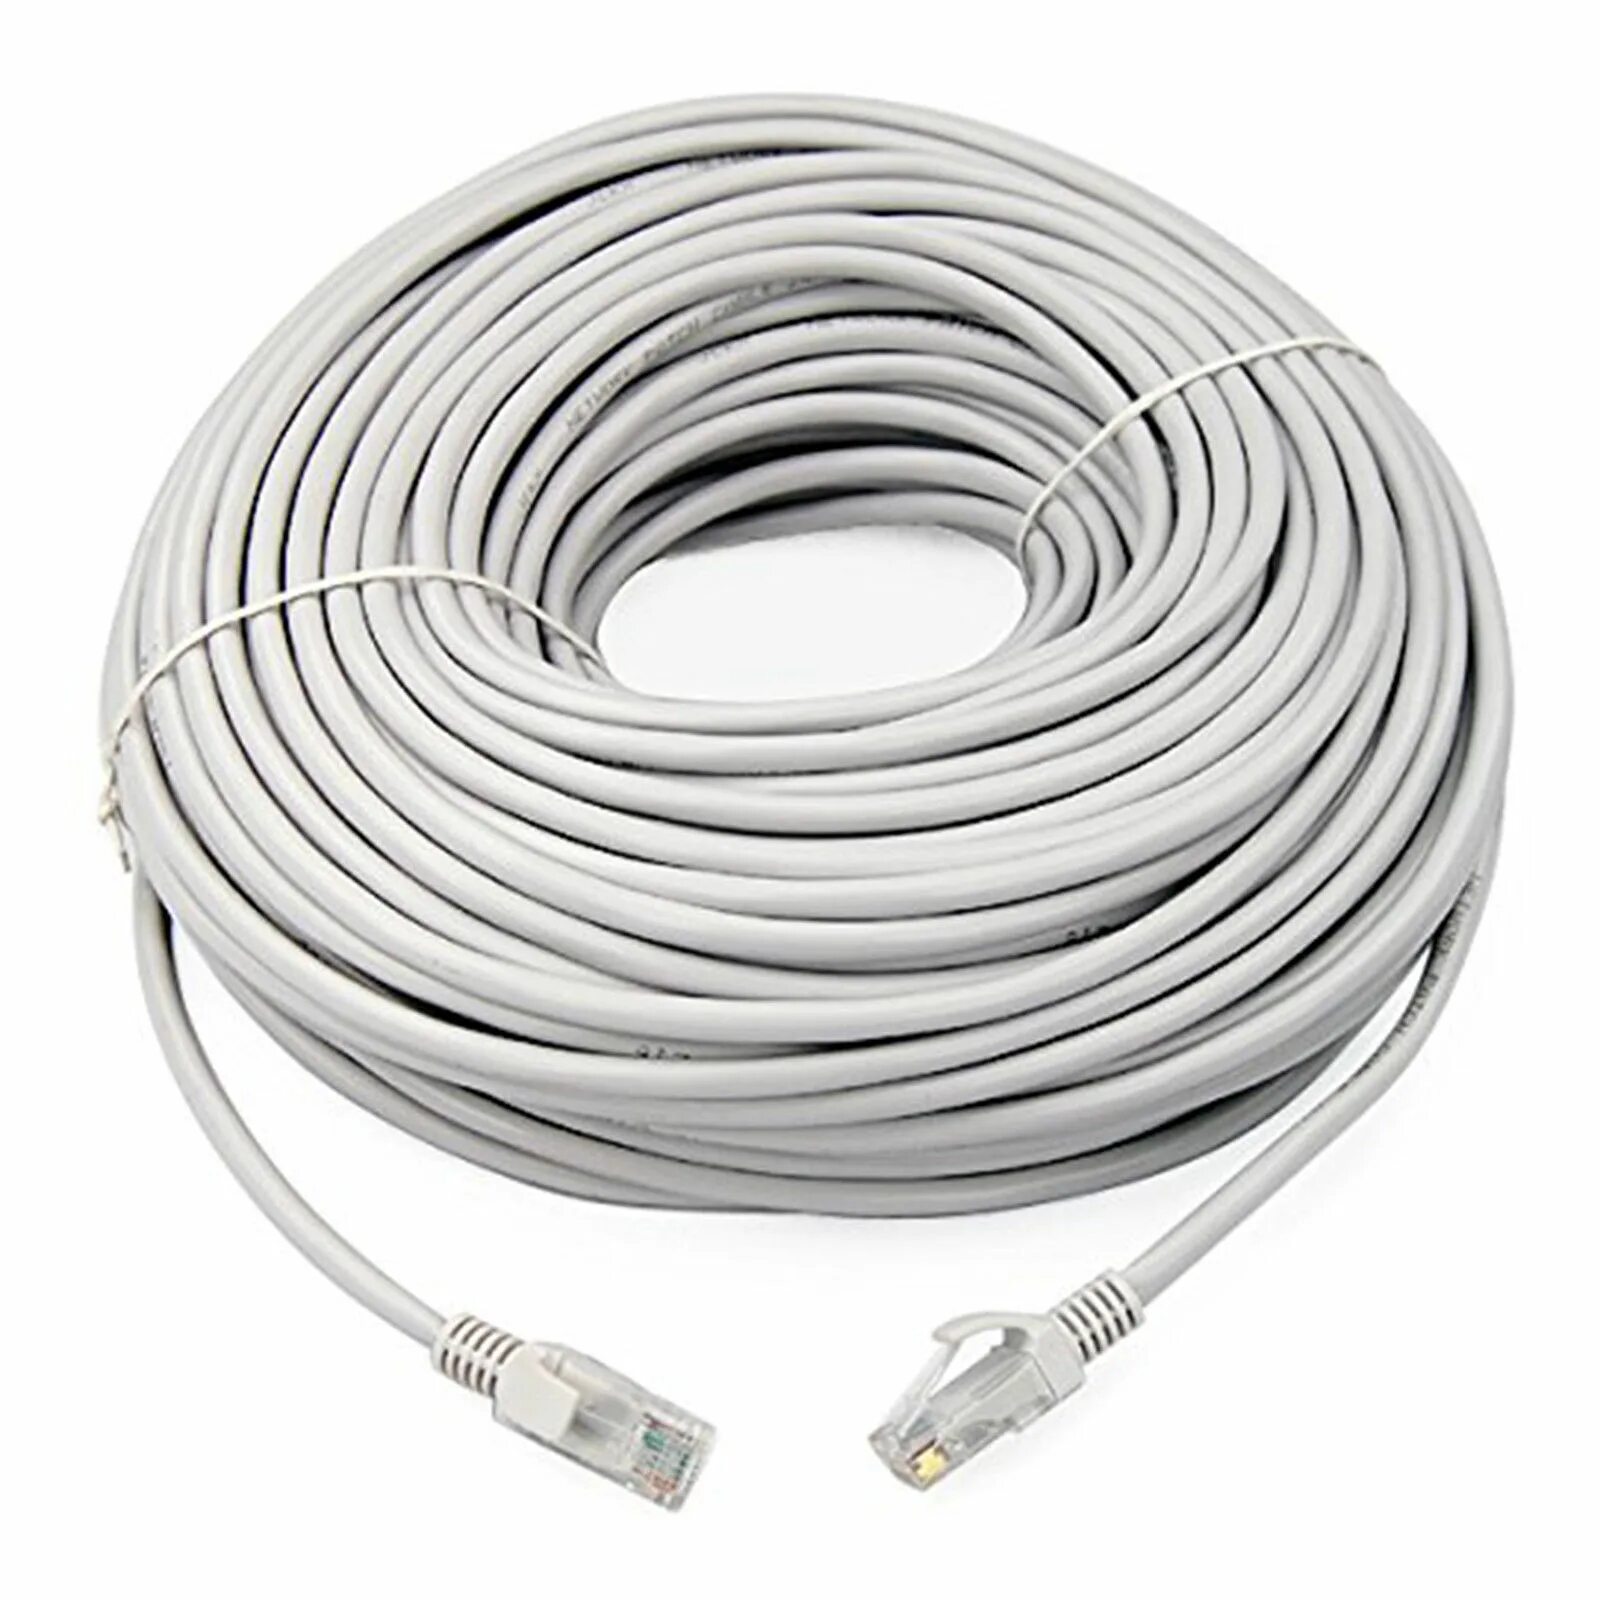 Новый интернет кабель. Кабель Ethernet 5e 10 метров. 100 Метров кабель патч корд. UTP Cable RJ 45 10 M. Ethernet кабель Cat-5e - 40 м.